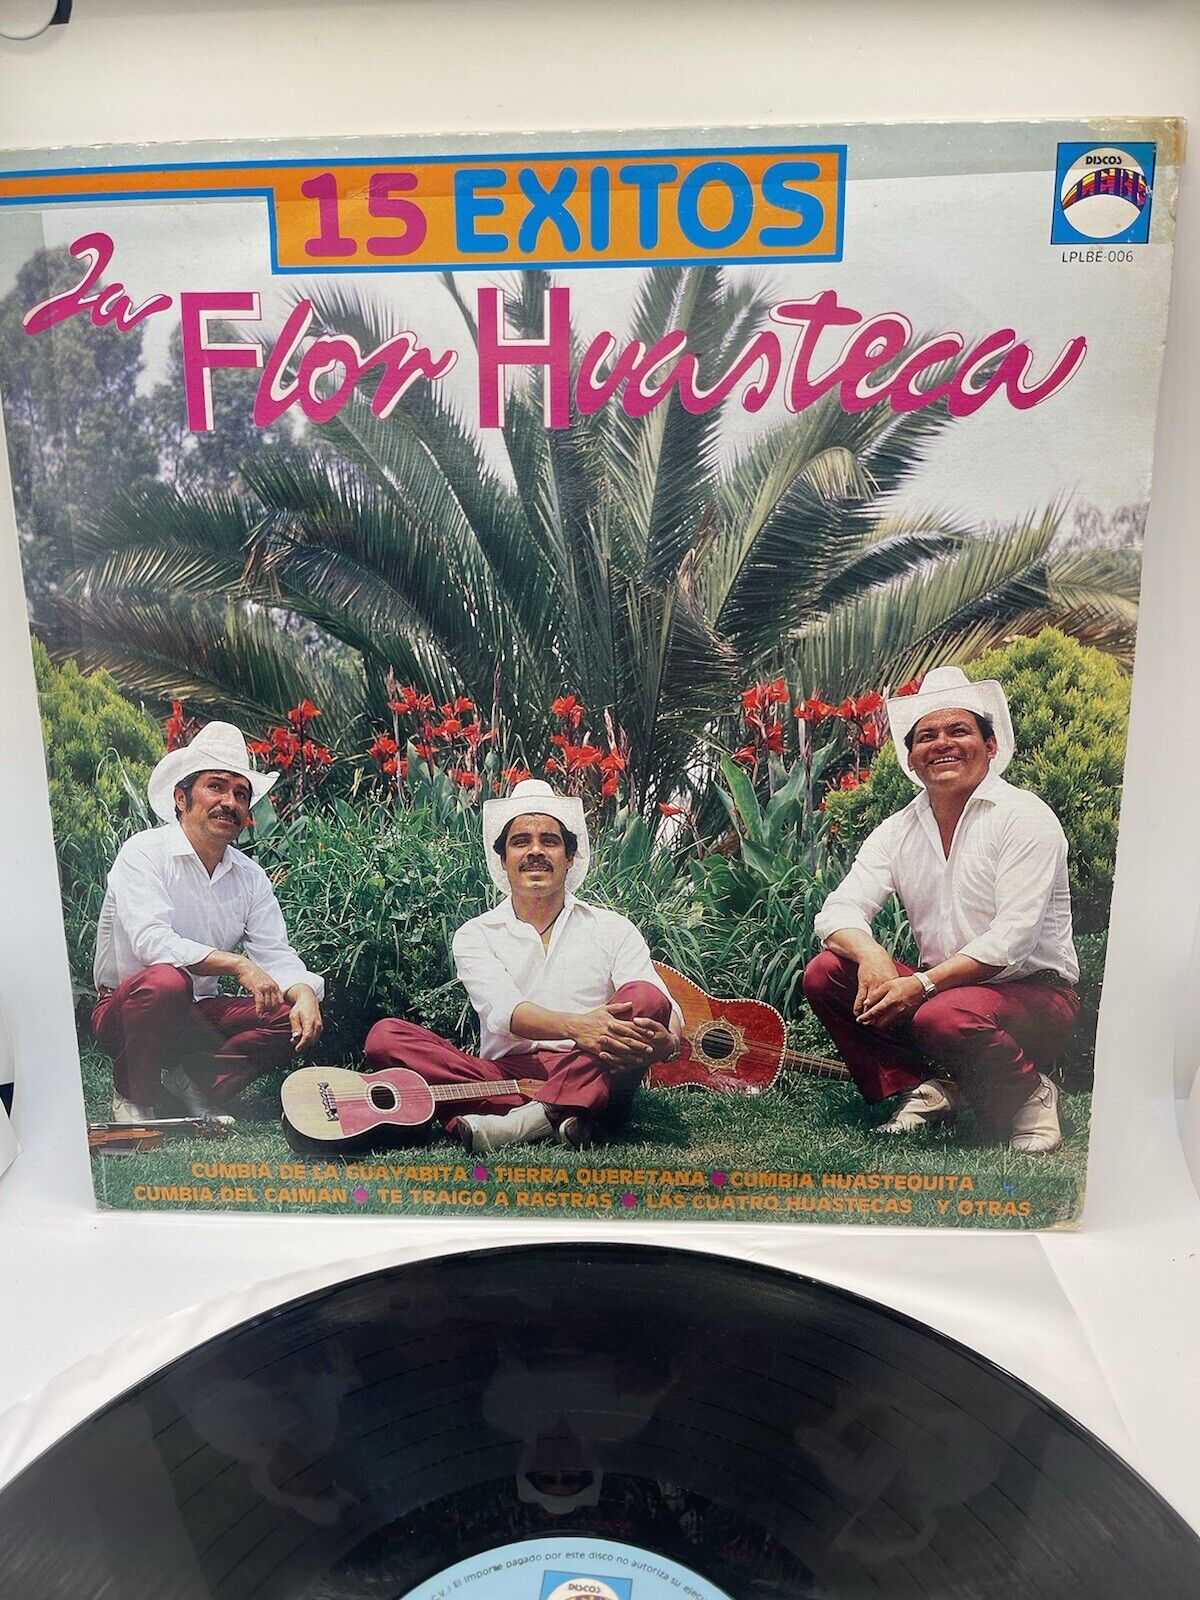 Vintage Rare Récord “La Flor Huasteca” 15 Éxitos